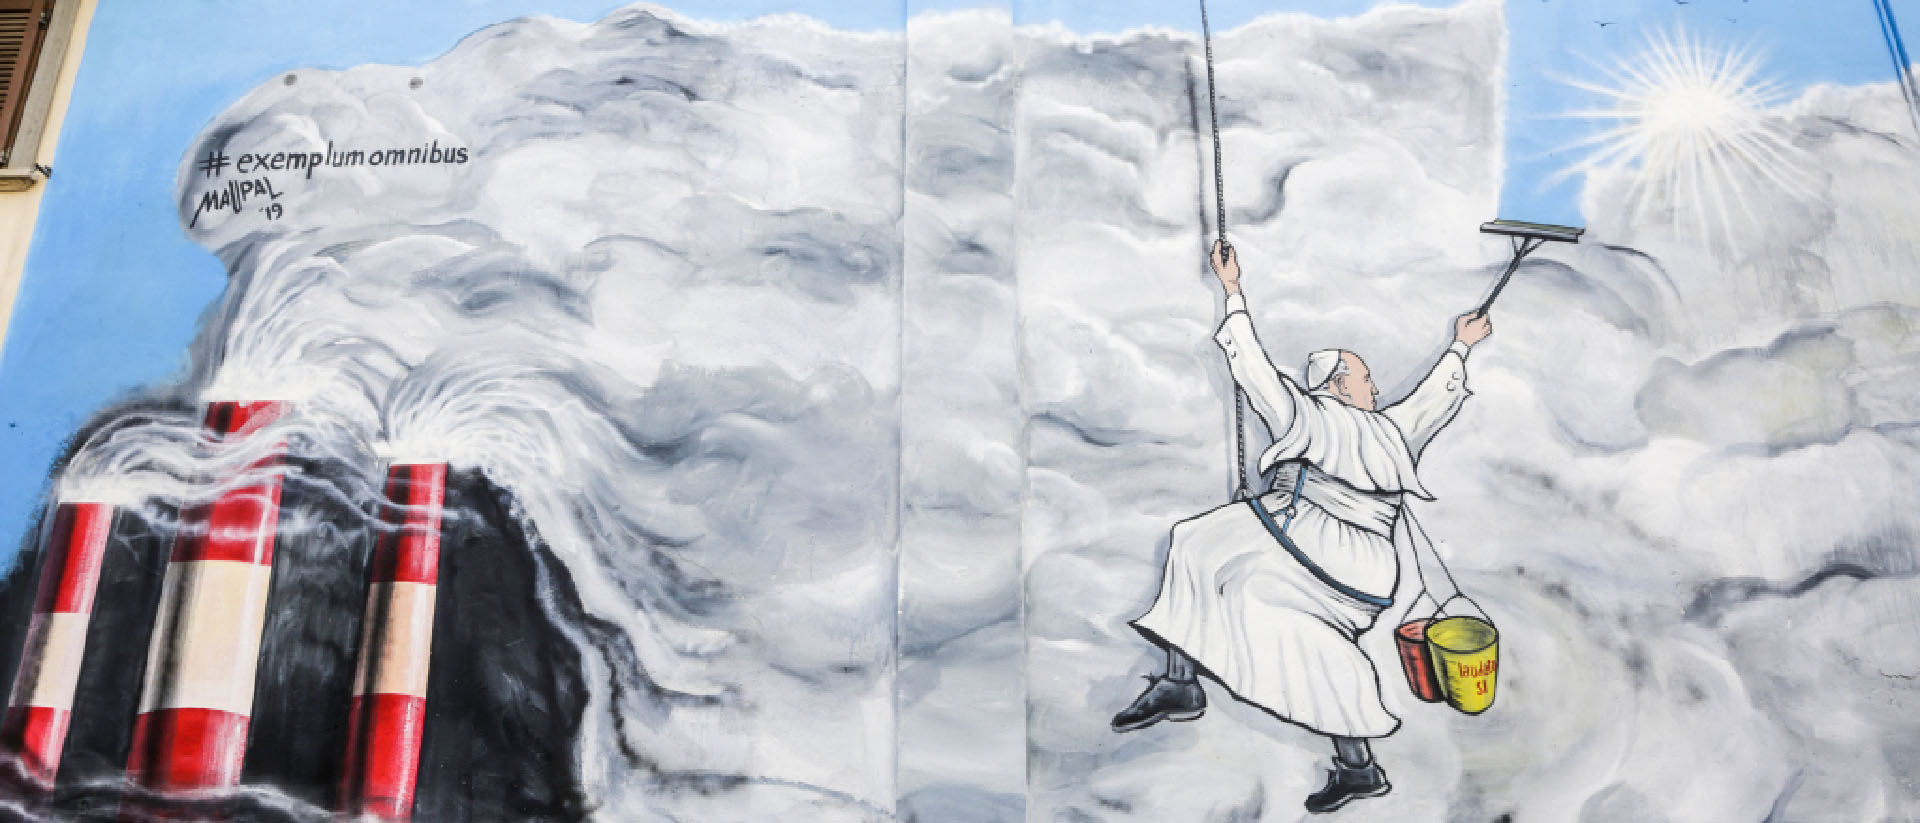 Une fresque réalisée par  Maupal en 2019 à Albano (Italie). Le pape François,  en laveur de carreaux, nettoie les nuages de smog pour laisser apparaître le ciel bleu et le soleil | DR